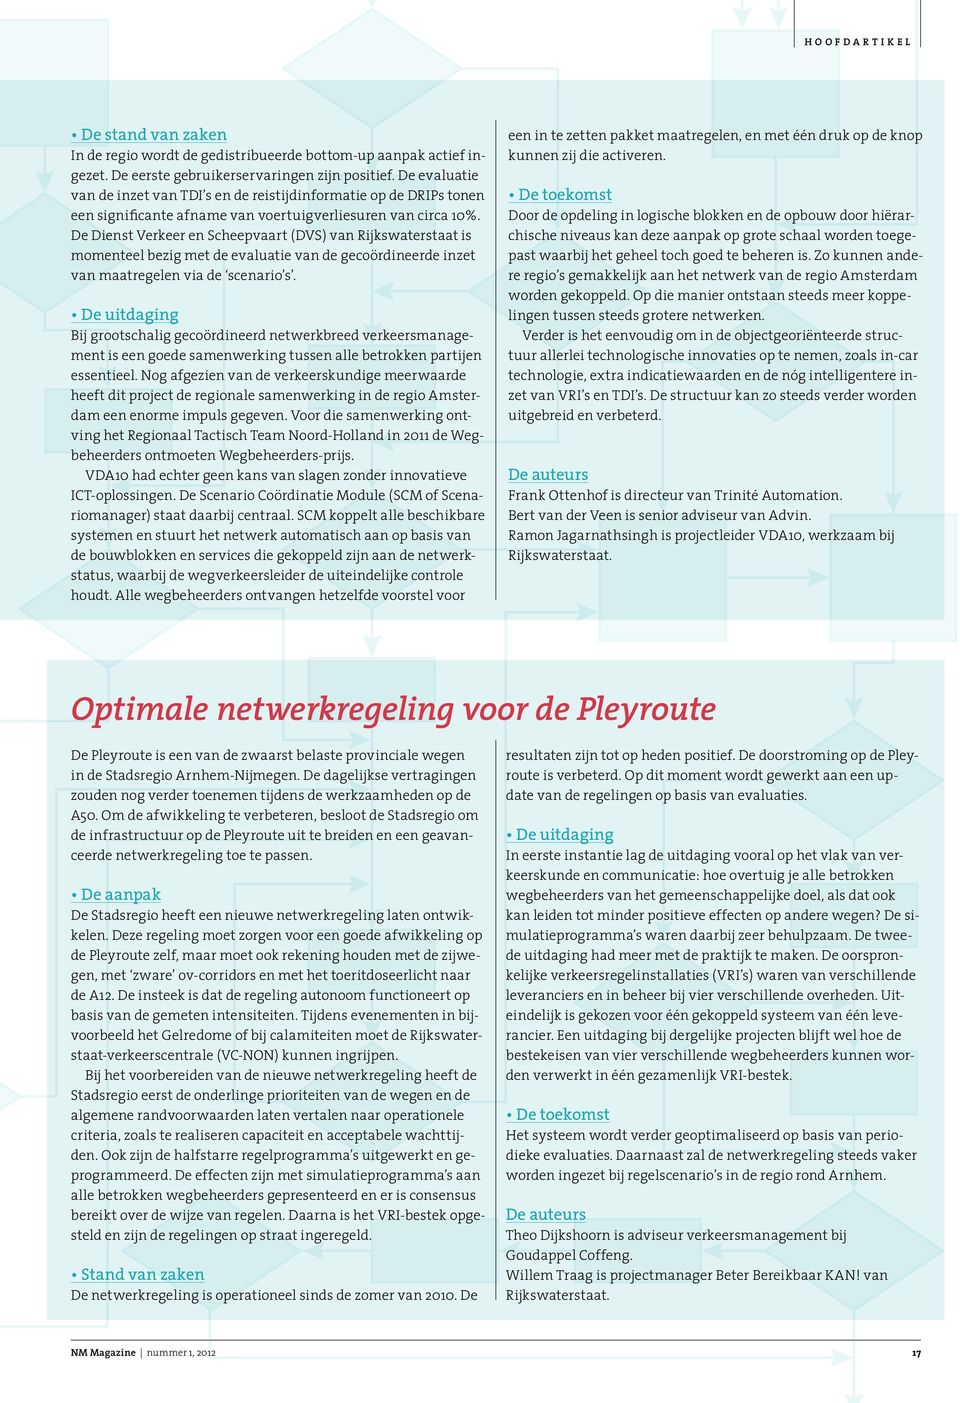 De Dienst Verkeer en Scheepvaart (DVS) van Rijkswaterstaat is momenteel bezig met de evaluatie van de gecoördineerde inzet van maatregelen via de scenario s.